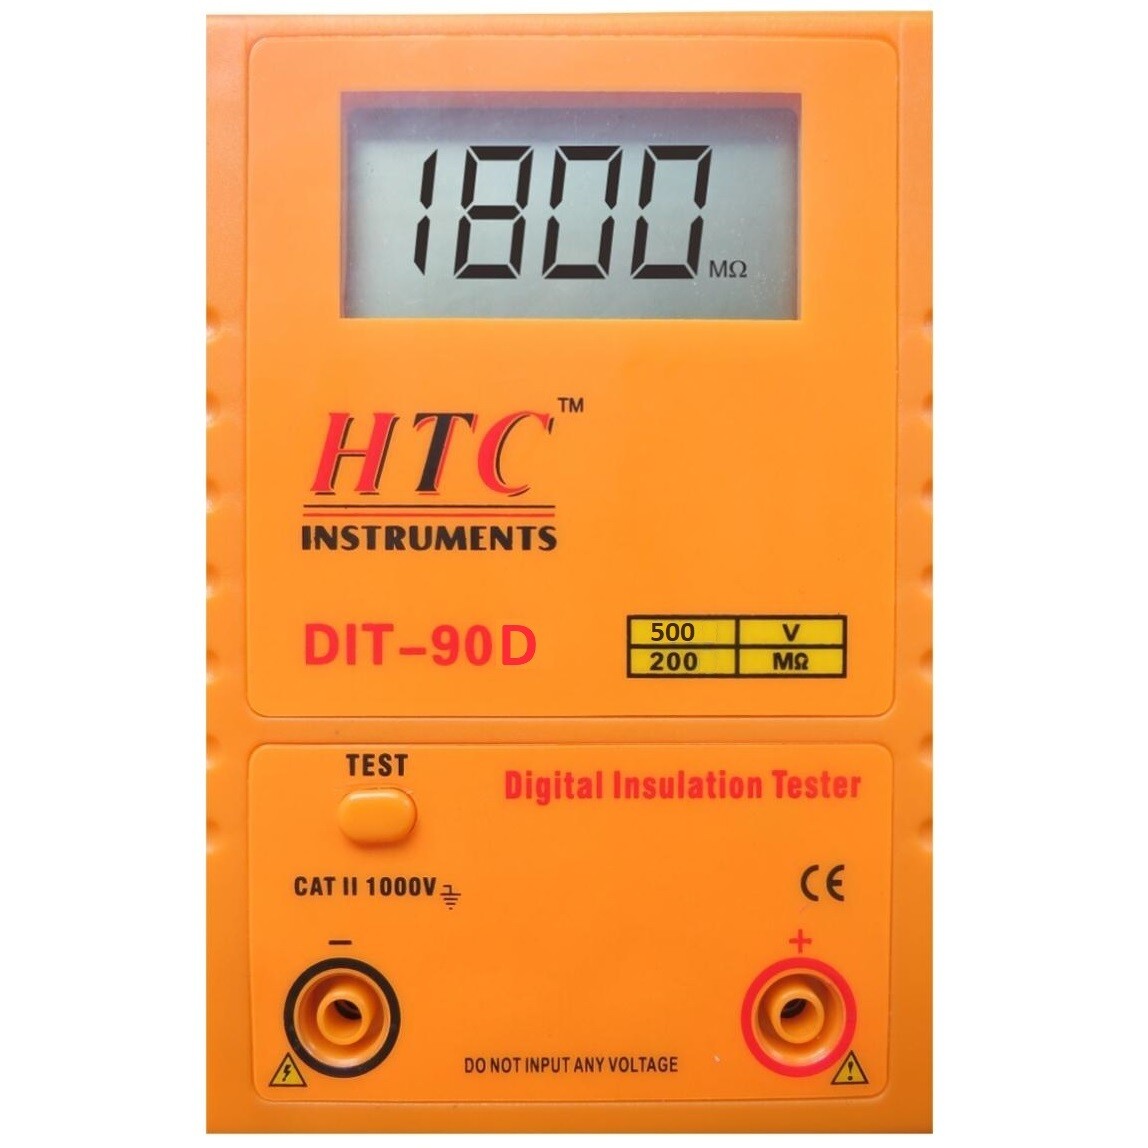 HTC DIT-90D Digital Insulation Tester 500V - 200MOhms